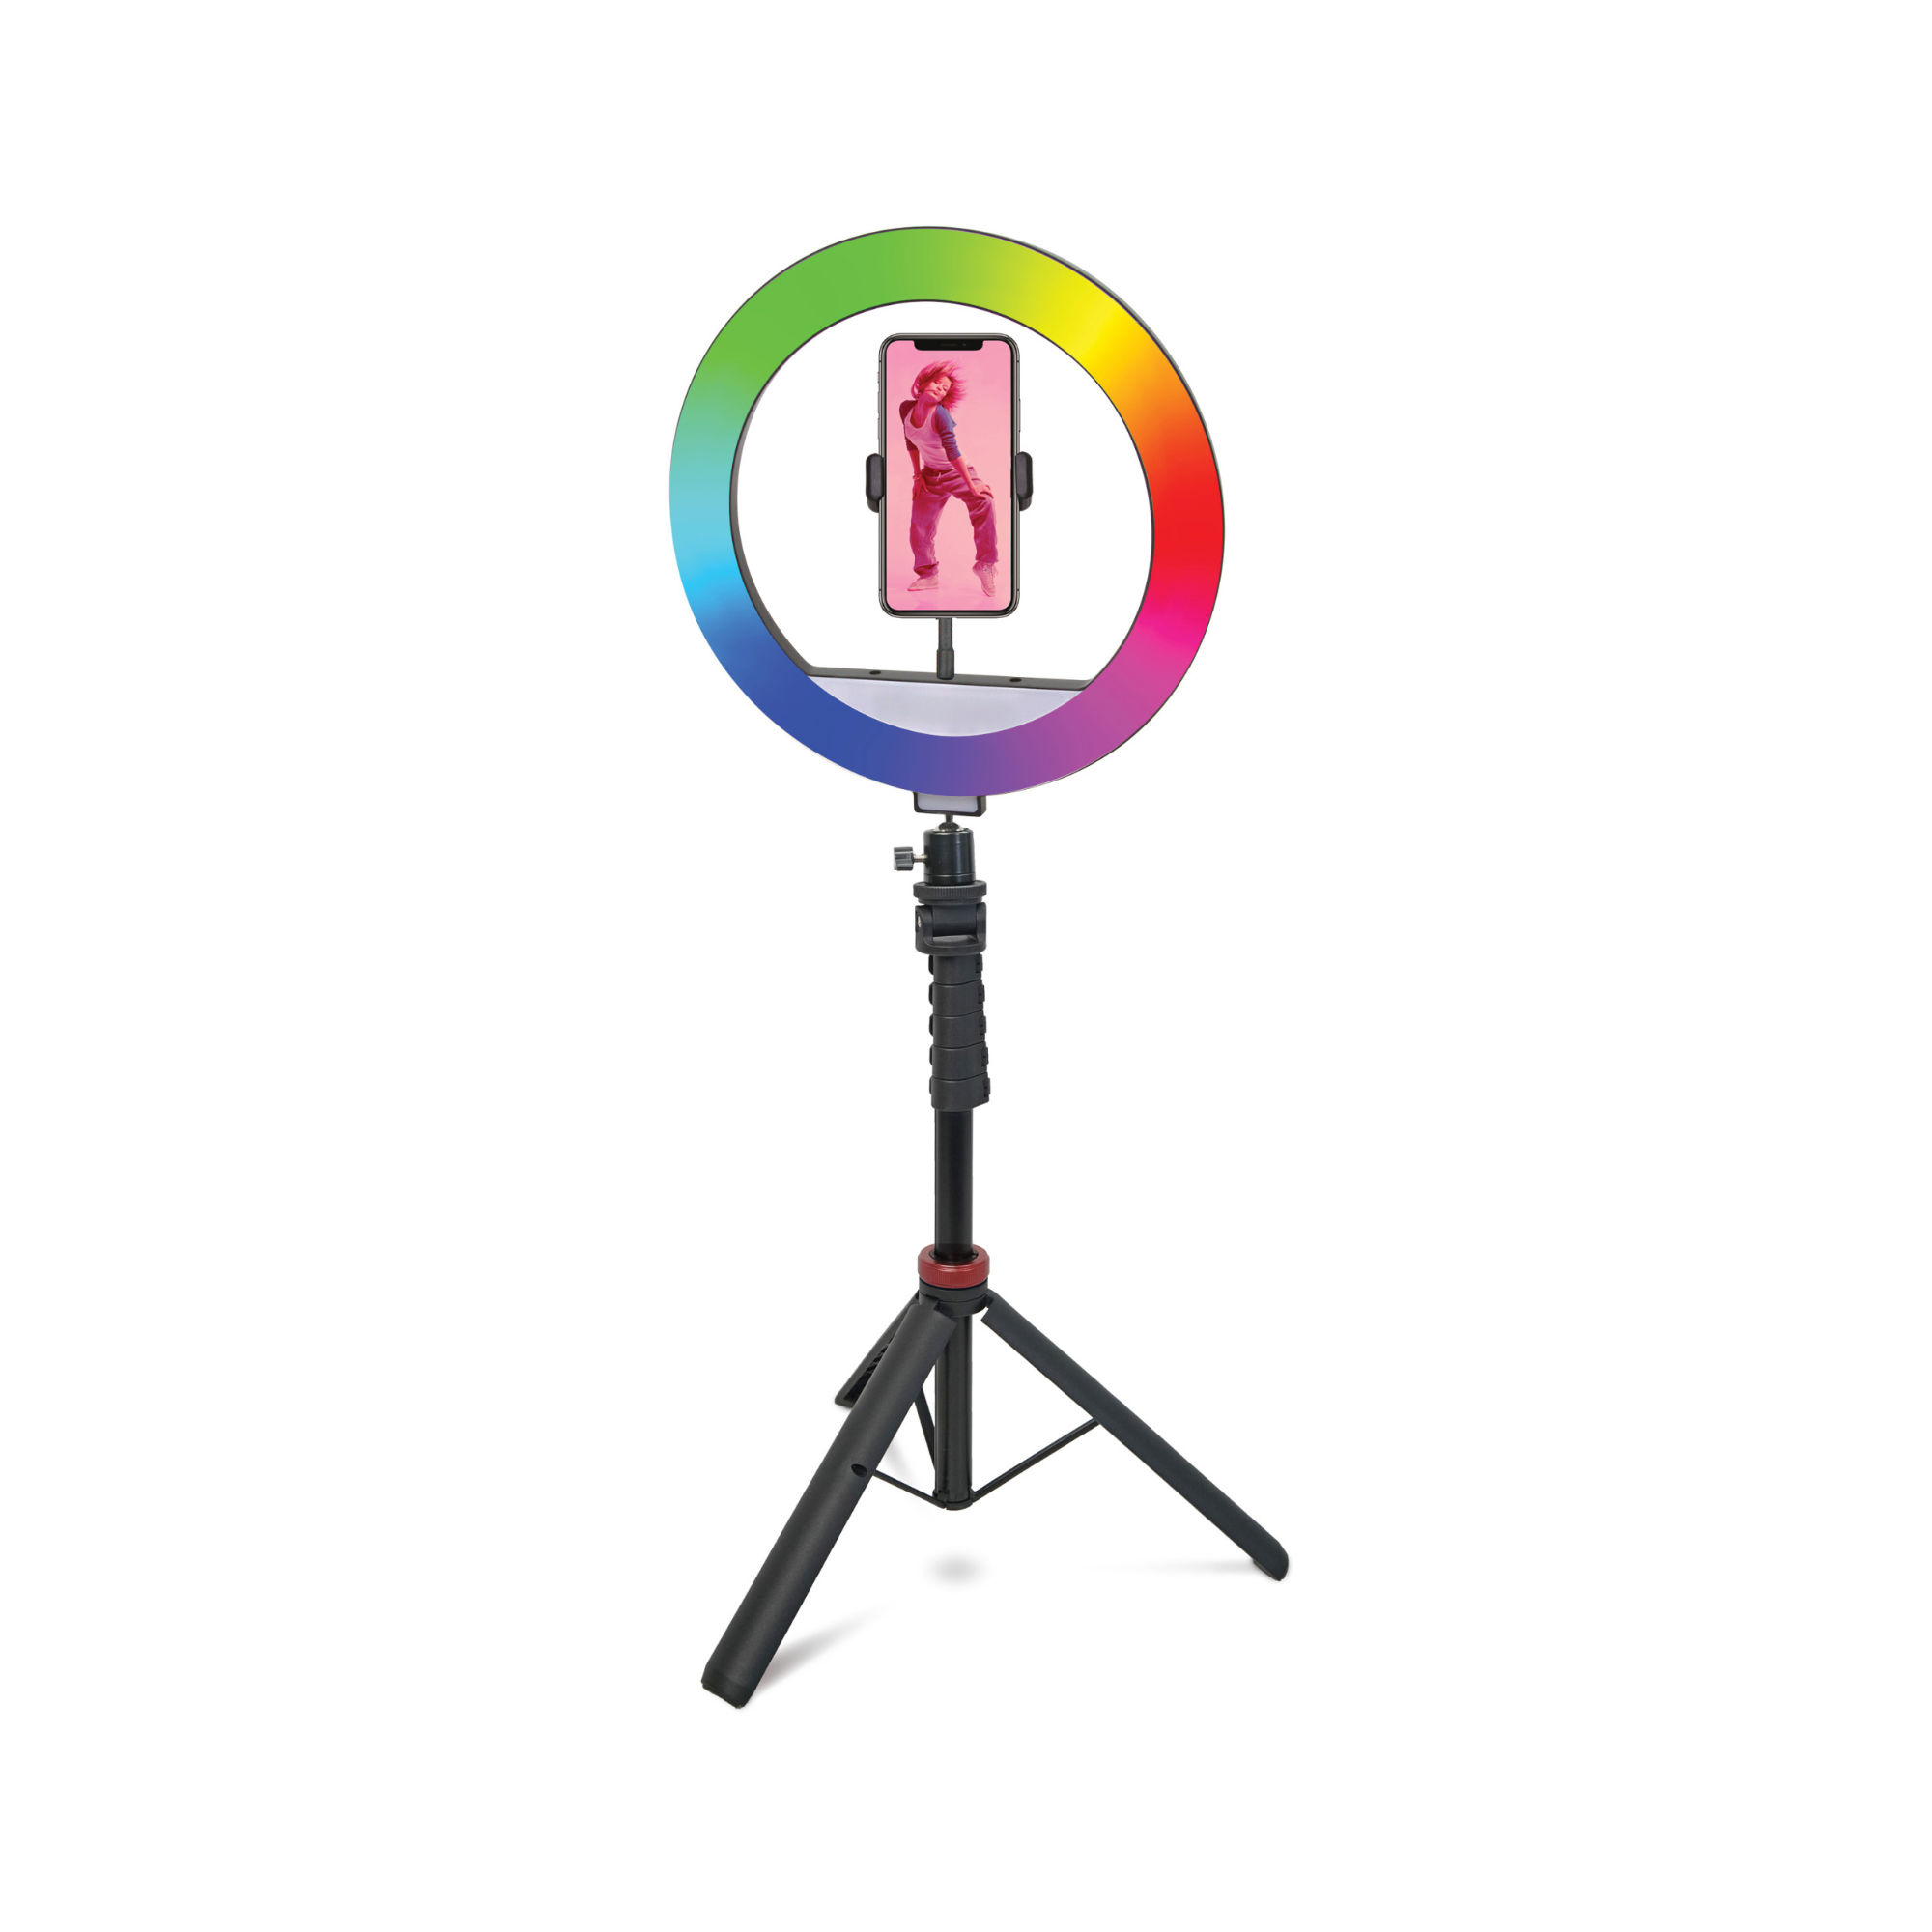 Mobifoto Mobilite 12R MKII Ring Light Vlogging Kit